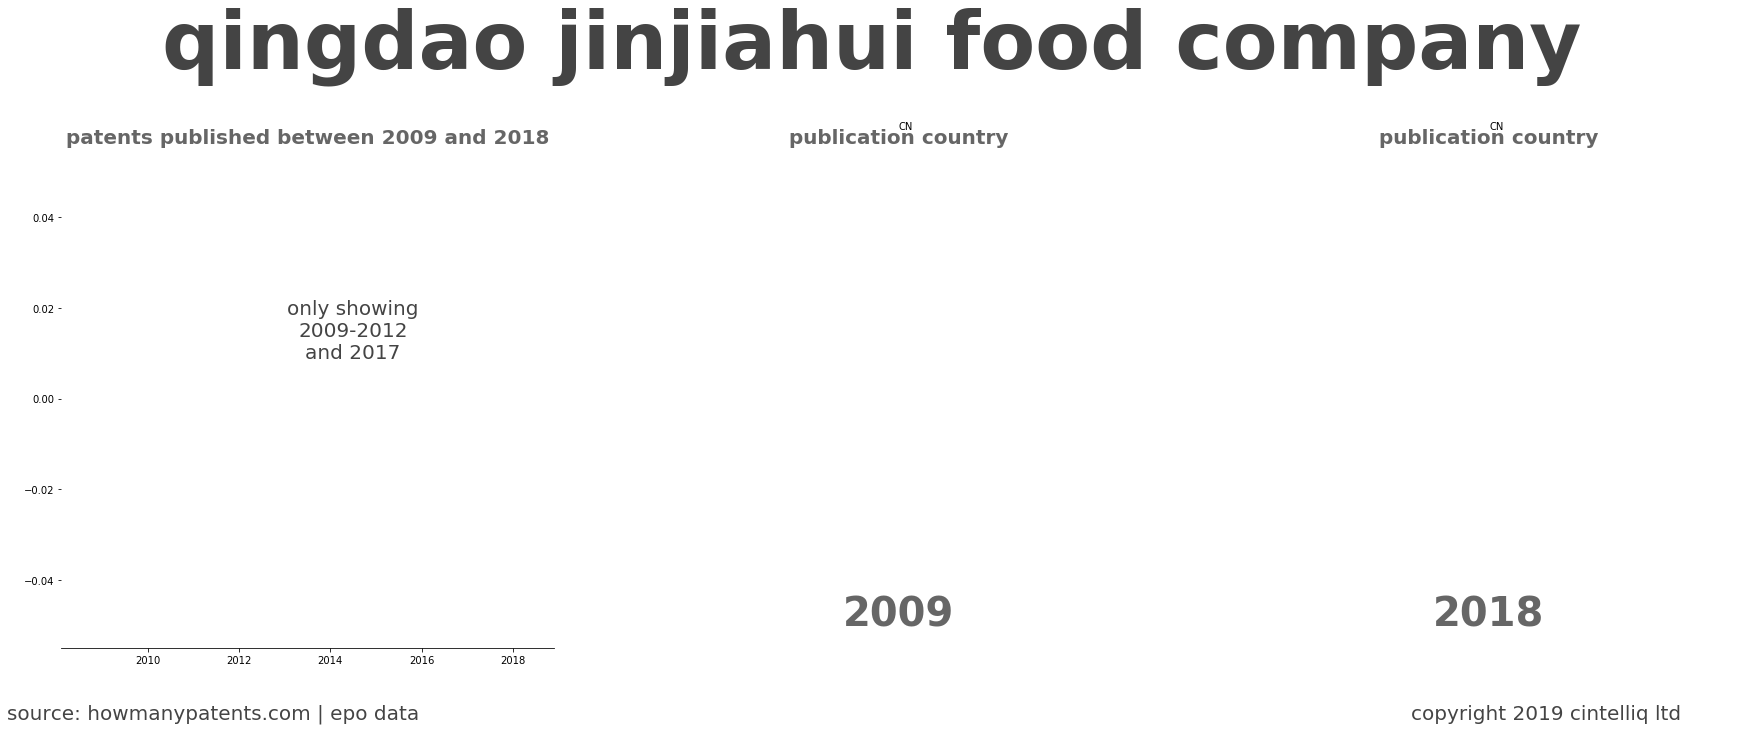 summary of patents for Qingdao Jinjiahui Food Company